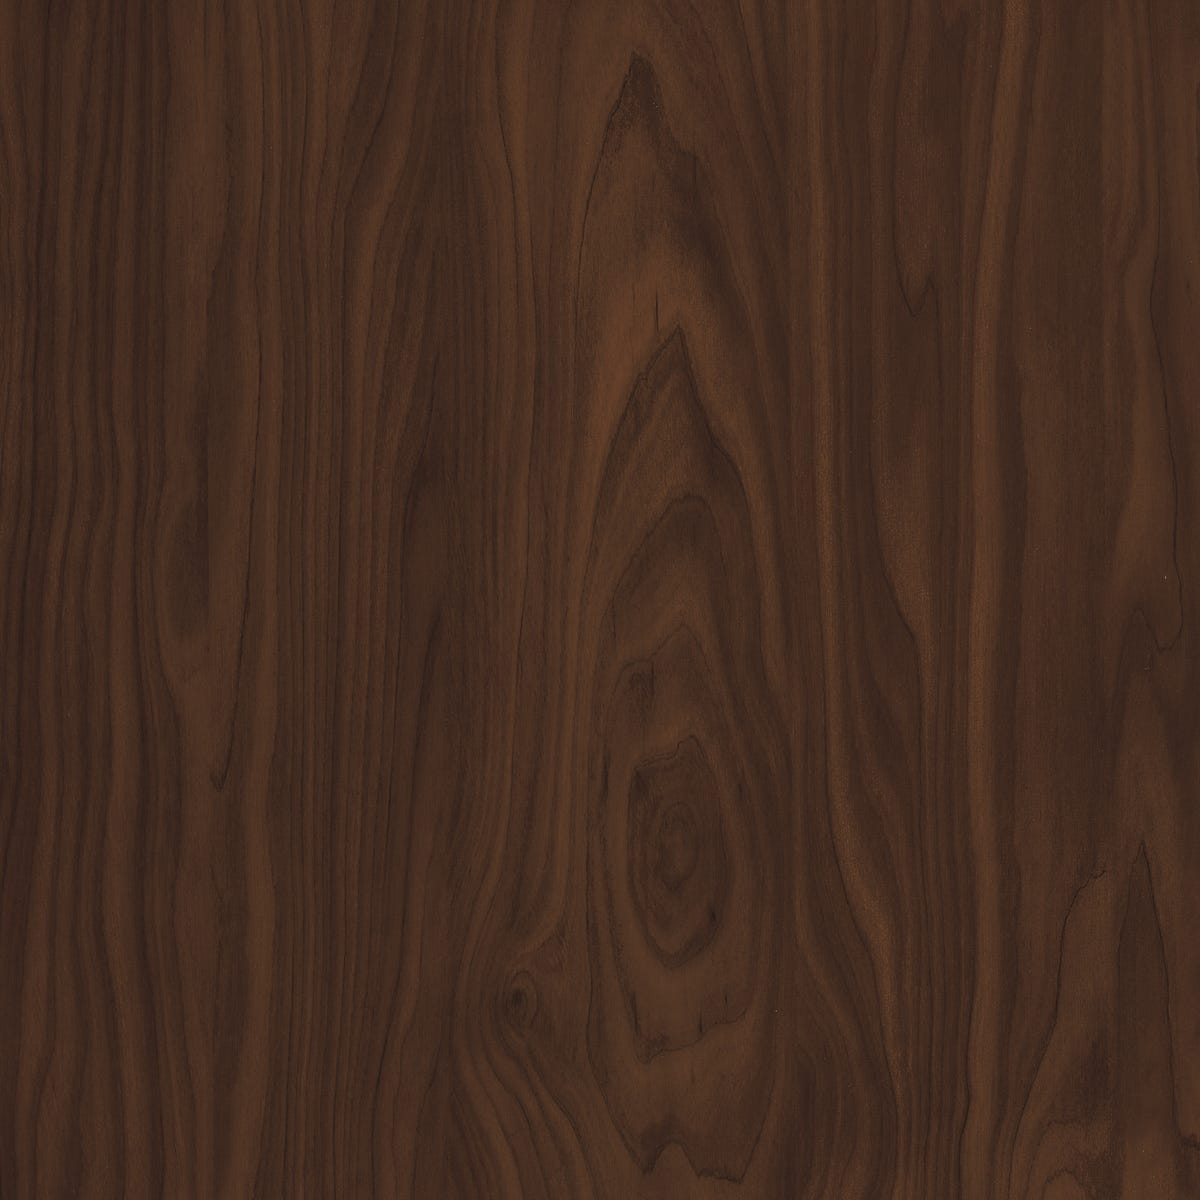 Zdjęcia - Pozostałe meble D-C-FIX Okleina Apfelbirke brązowa 67.5 x 200 cm imitująca drewno 